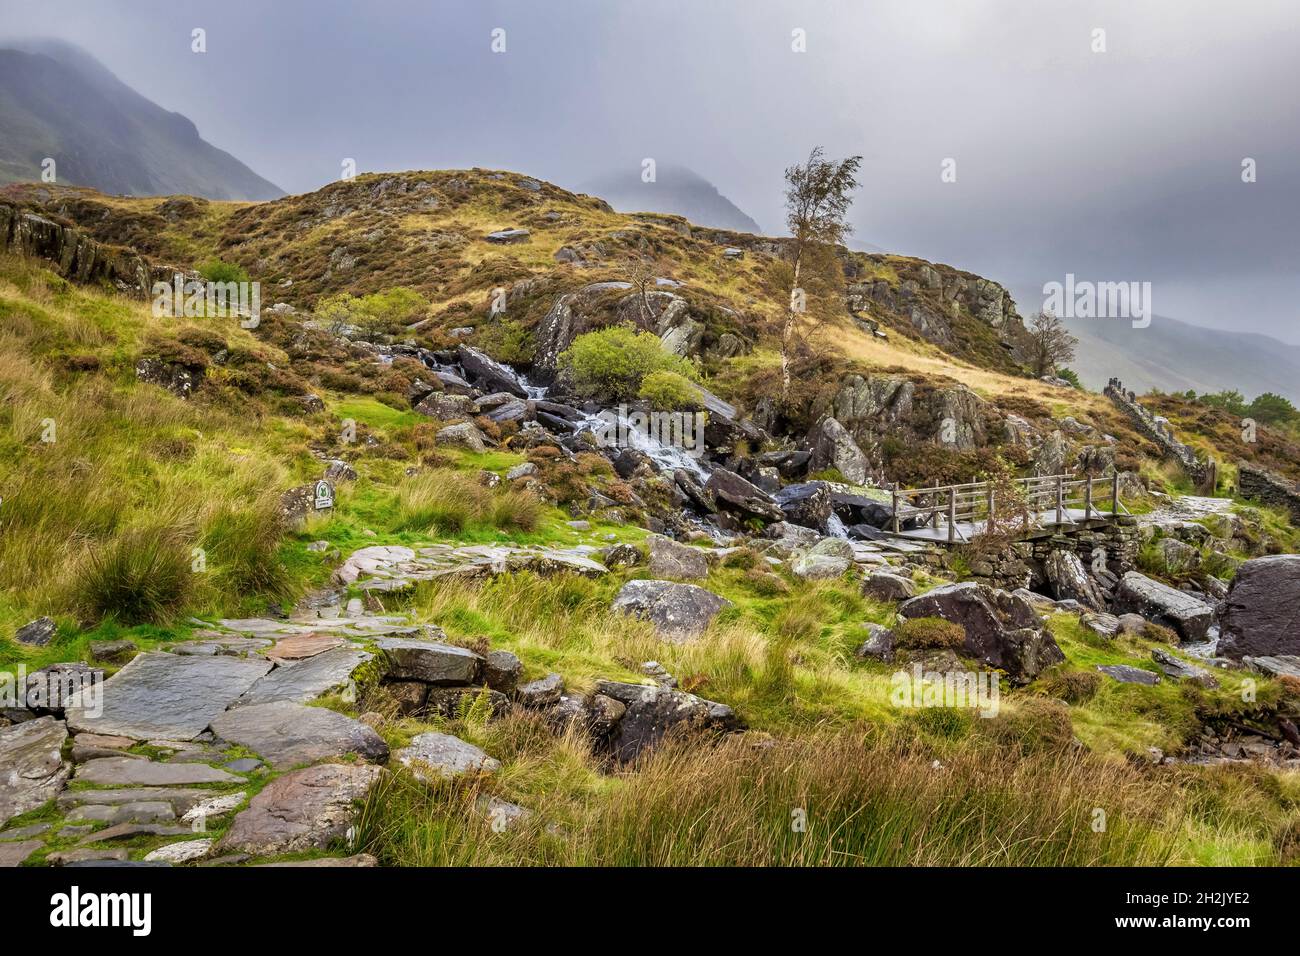 Atemberaubende Landschaft Snowdonia National Park, Nordwales. Stockfoto